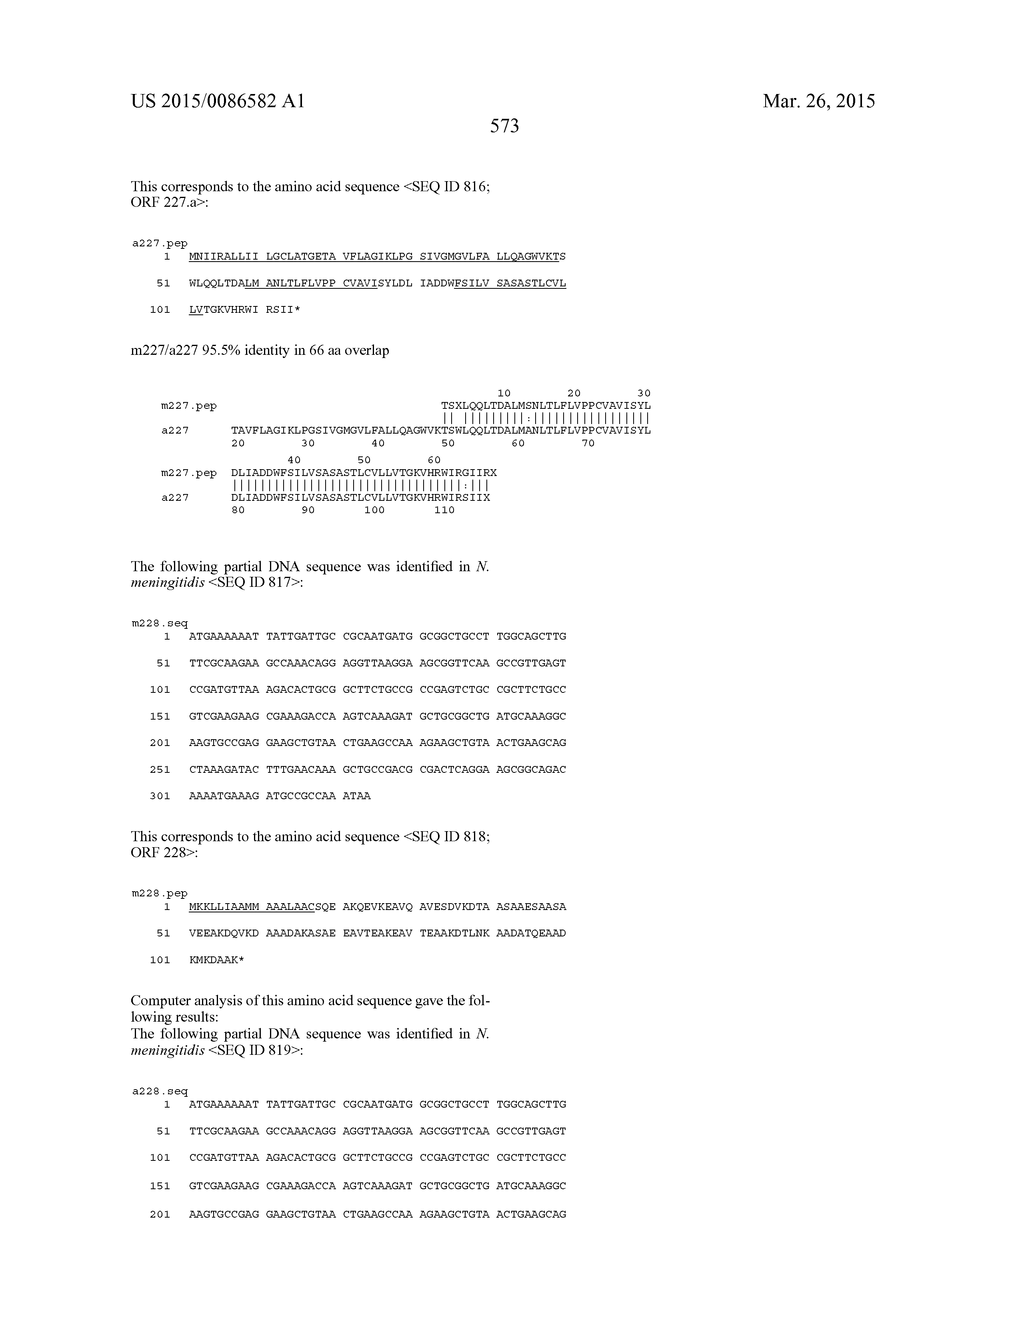 NEISSERIA MENINGITIDIS ANTIGENS AND COMPOSITIONS - diagram, schematic, and image 605